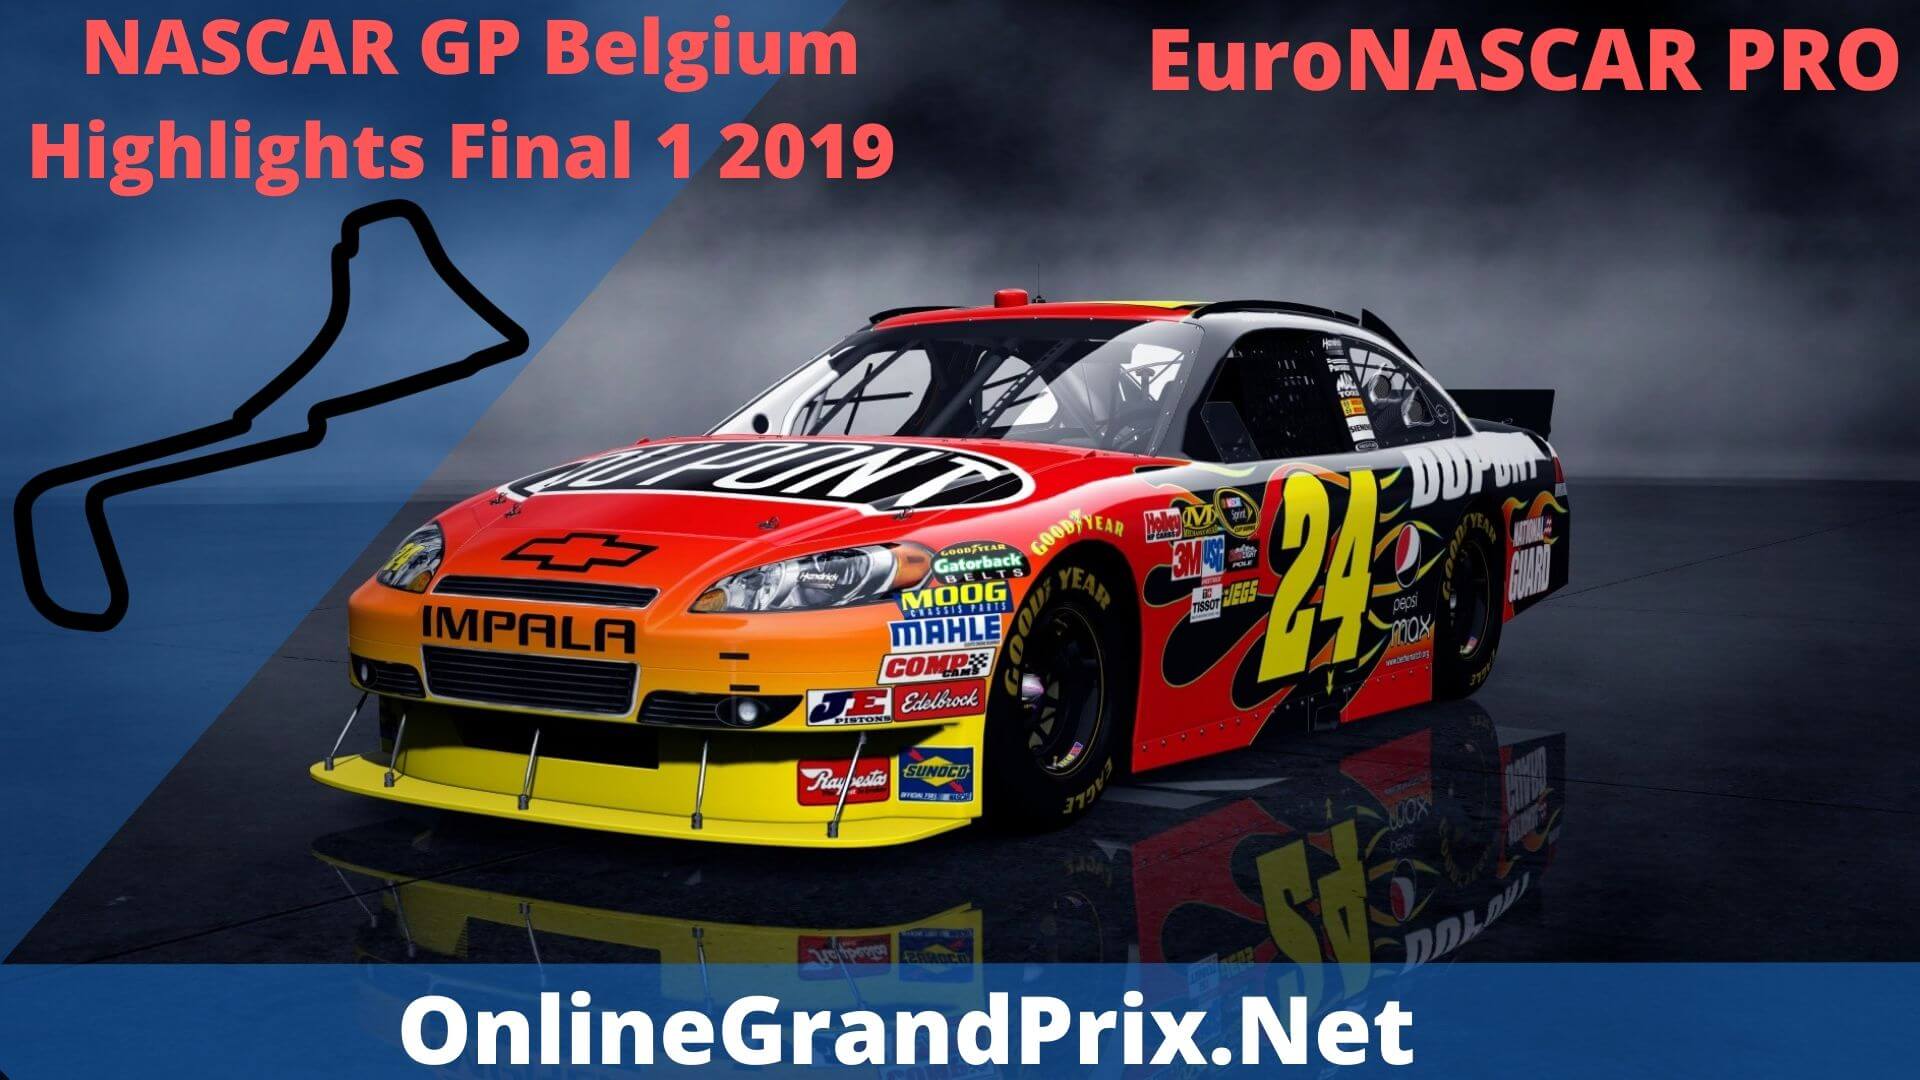 NASCAR GP Belgium Final 1 Highlights 2019